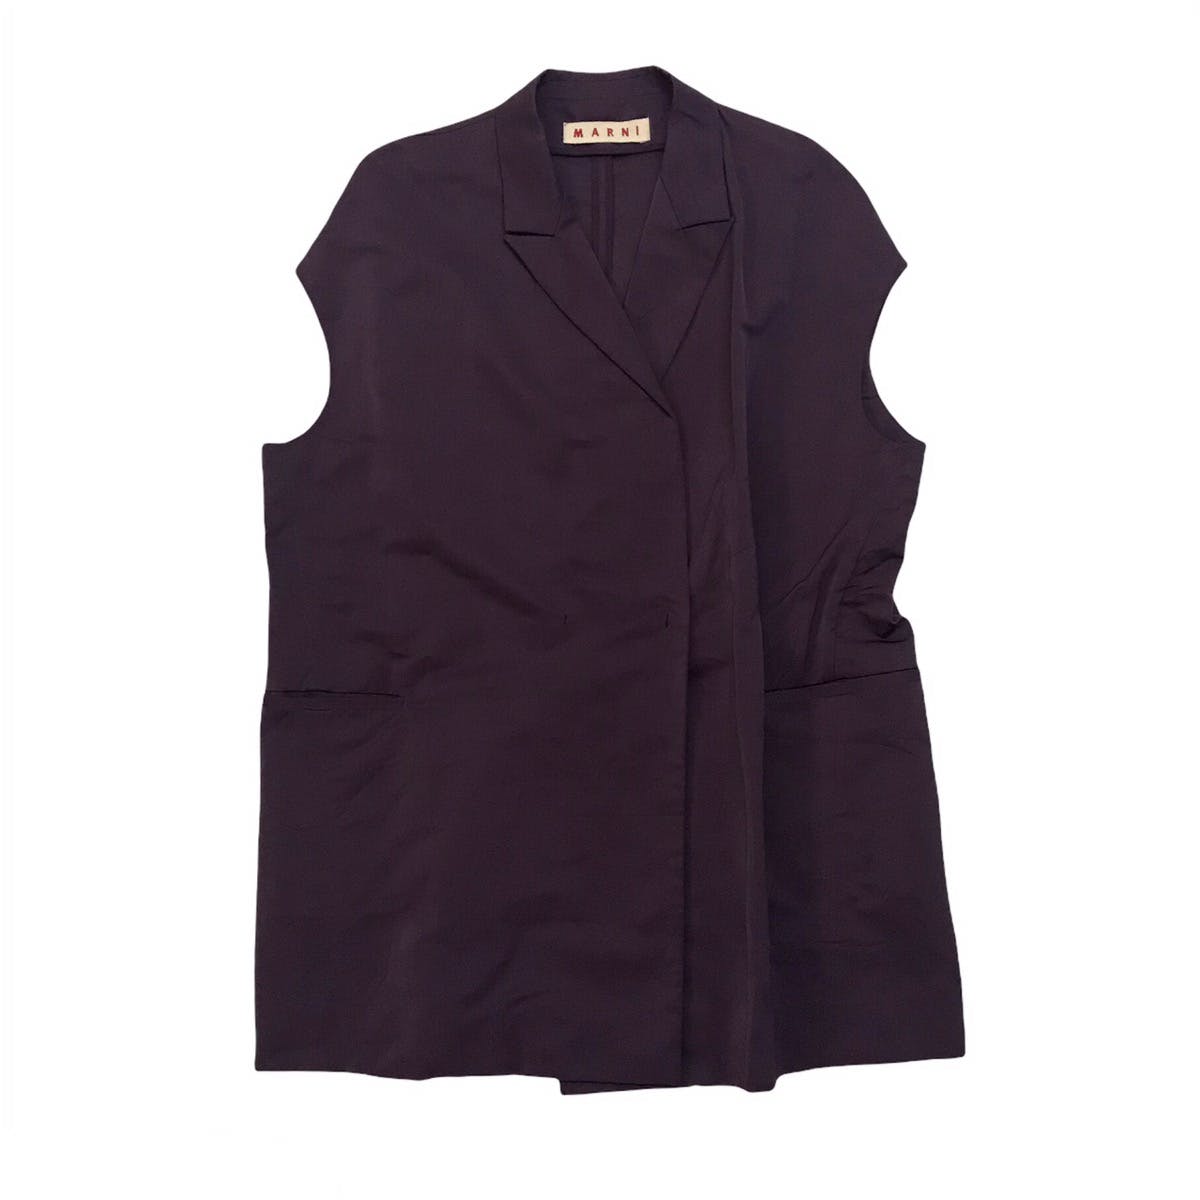 Marni Women Sleeveless Jacket Style Made in Italy - 1